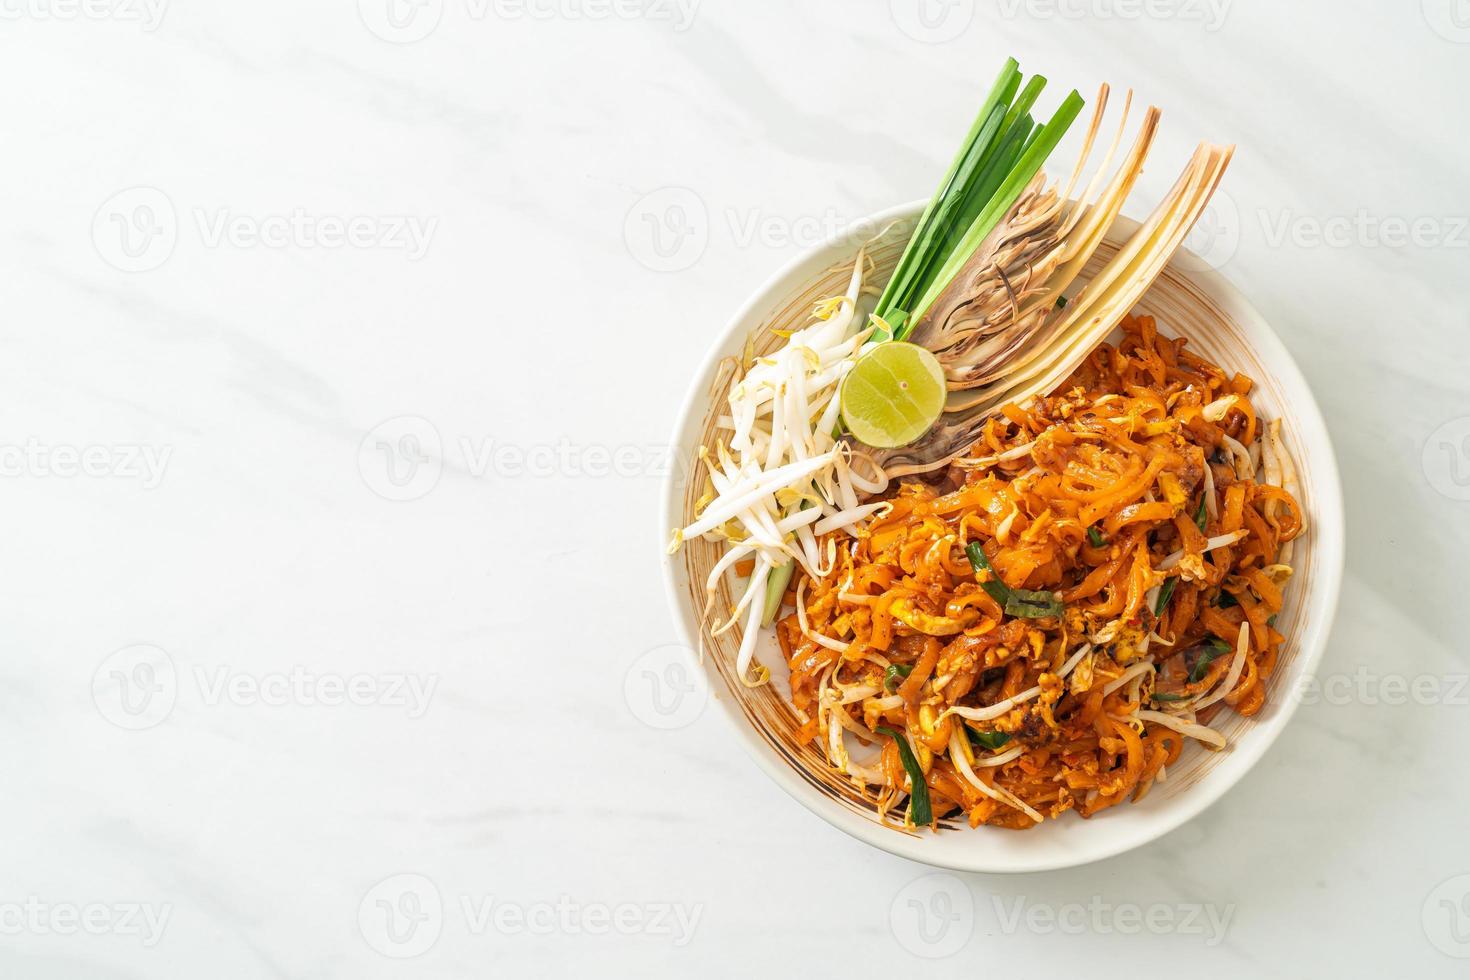 uppstekt nudel med tofu och groddar eller pad thai - asiatisk matstil foto